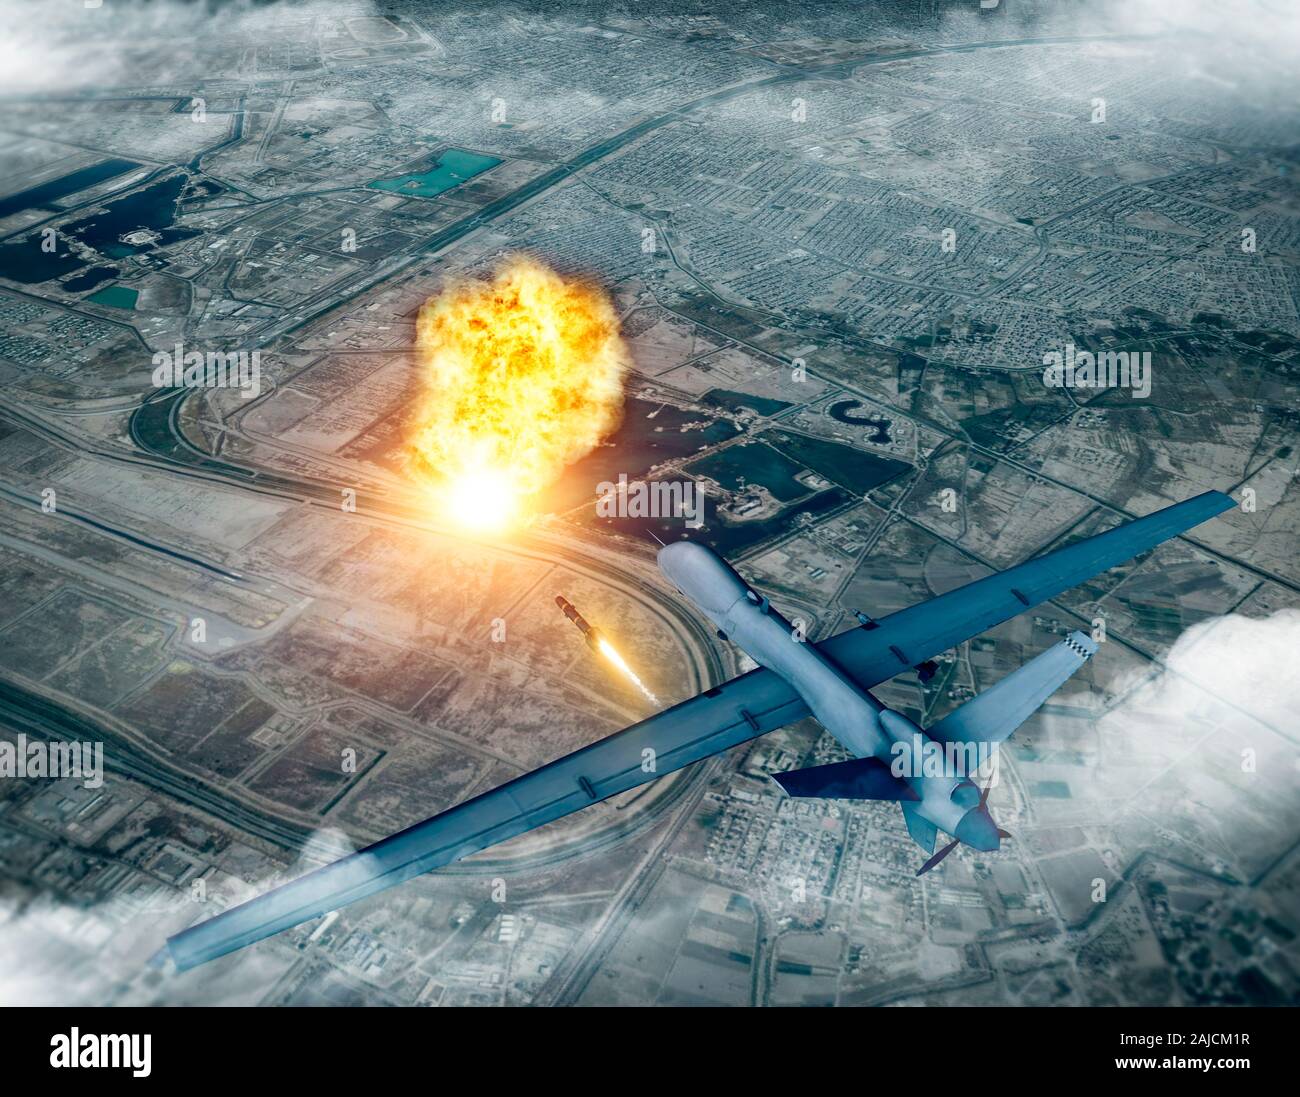 Noi drone attacco contro il convoglio del generale iraniano Soleimani  Qassem, 3d rendering. Aeroporto di Baghdad, Iraq Foto stock - Alamy